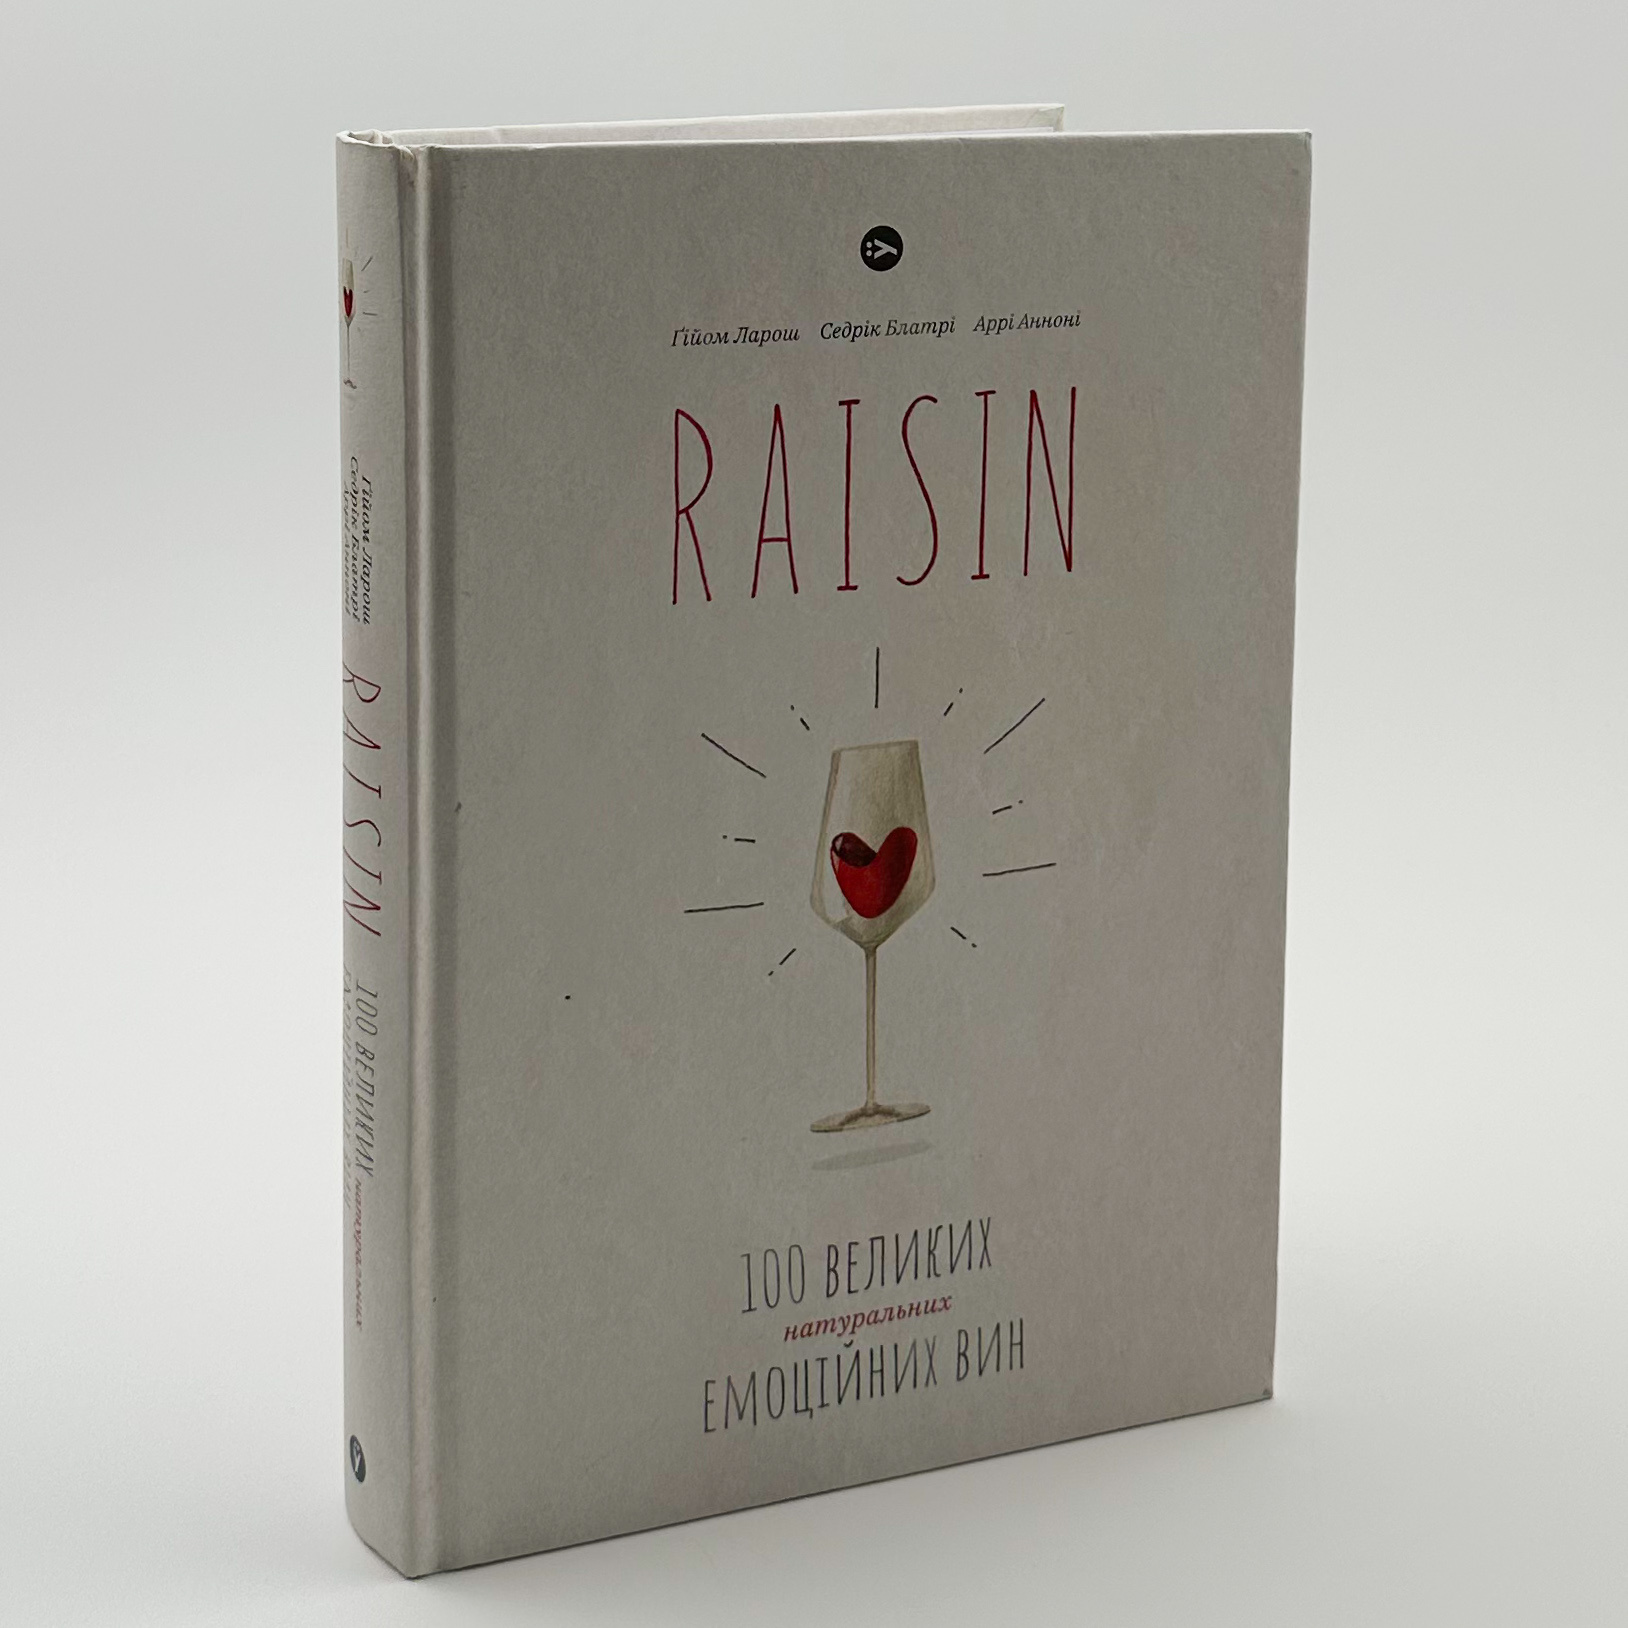 Raisin. 100 великих натуральних емоційних вин. Автор — Ґійом Ларош, Аррі Анноні, Седрік Блатрі. 